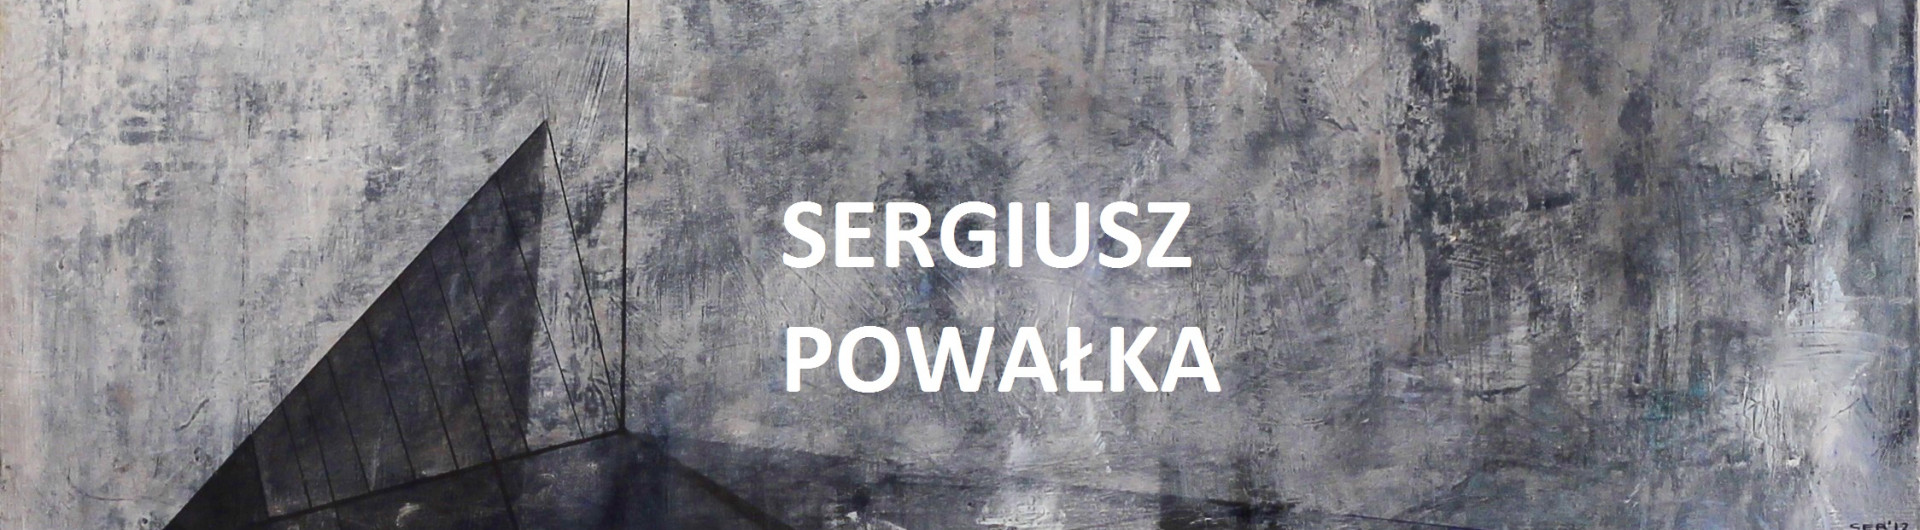 Sergiusz Powałka